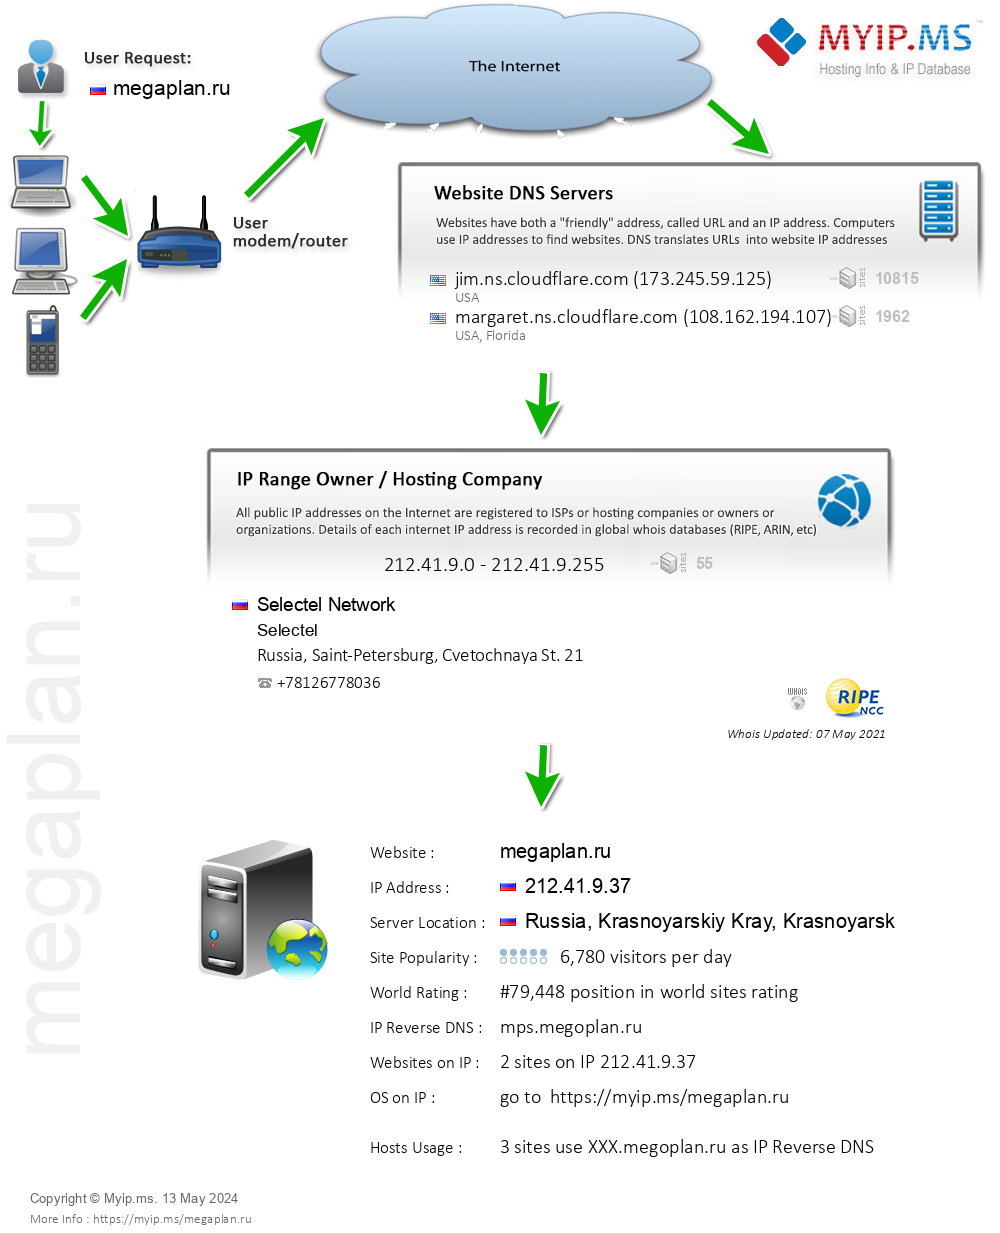 Megaplan.ru - Website Hosting Visual IP Diagram